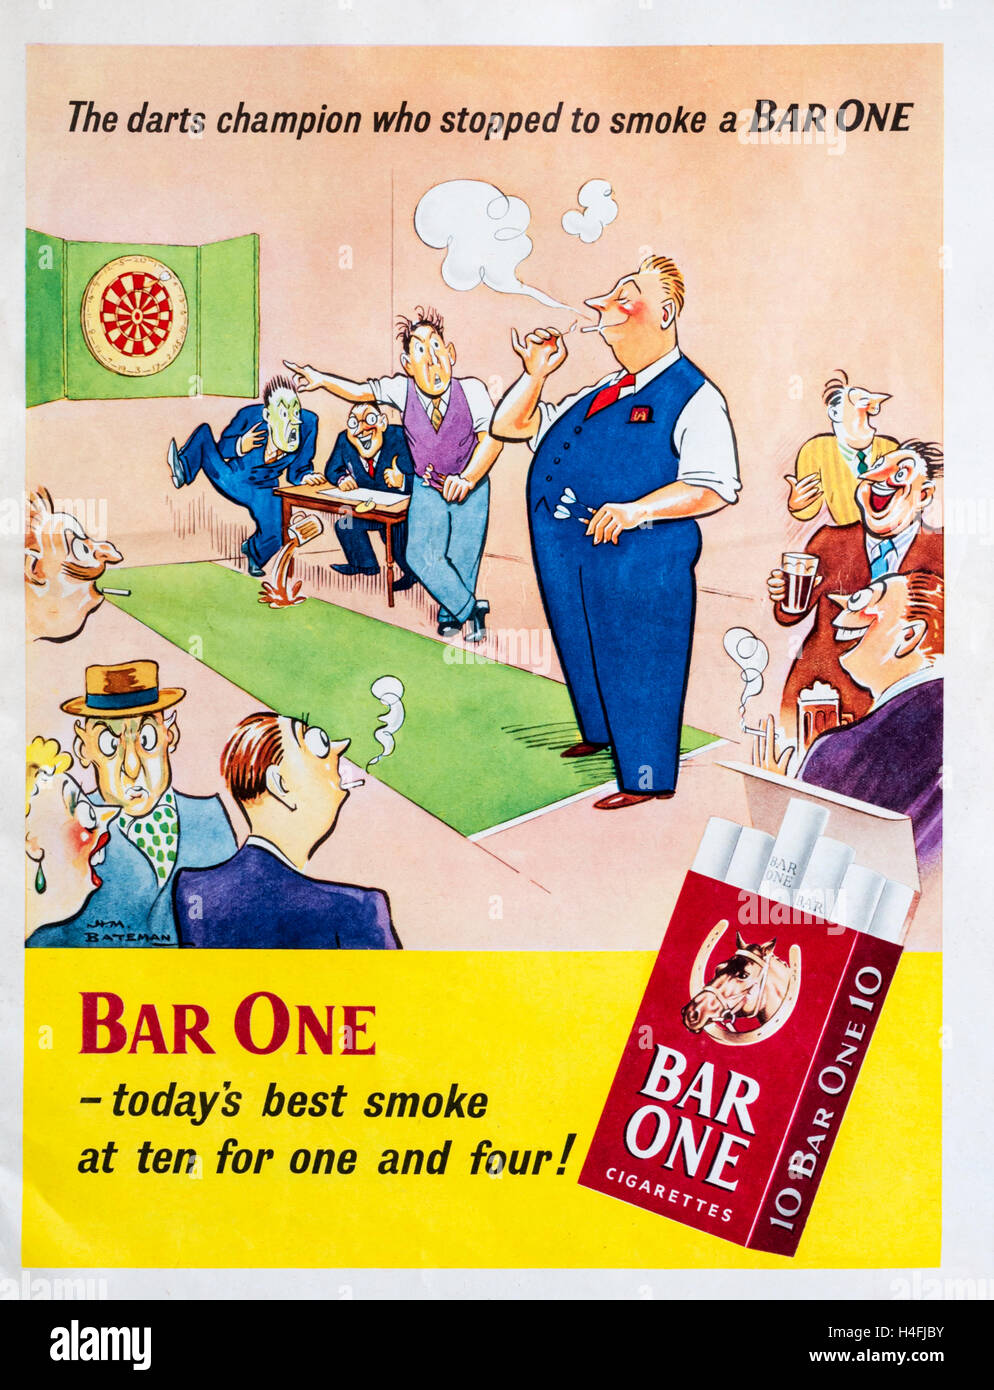 Una revista de 1950 anuncio protagonizado por una caricatura de Bateman publicidad Bar uno de los cigarrillos. Foto de stock